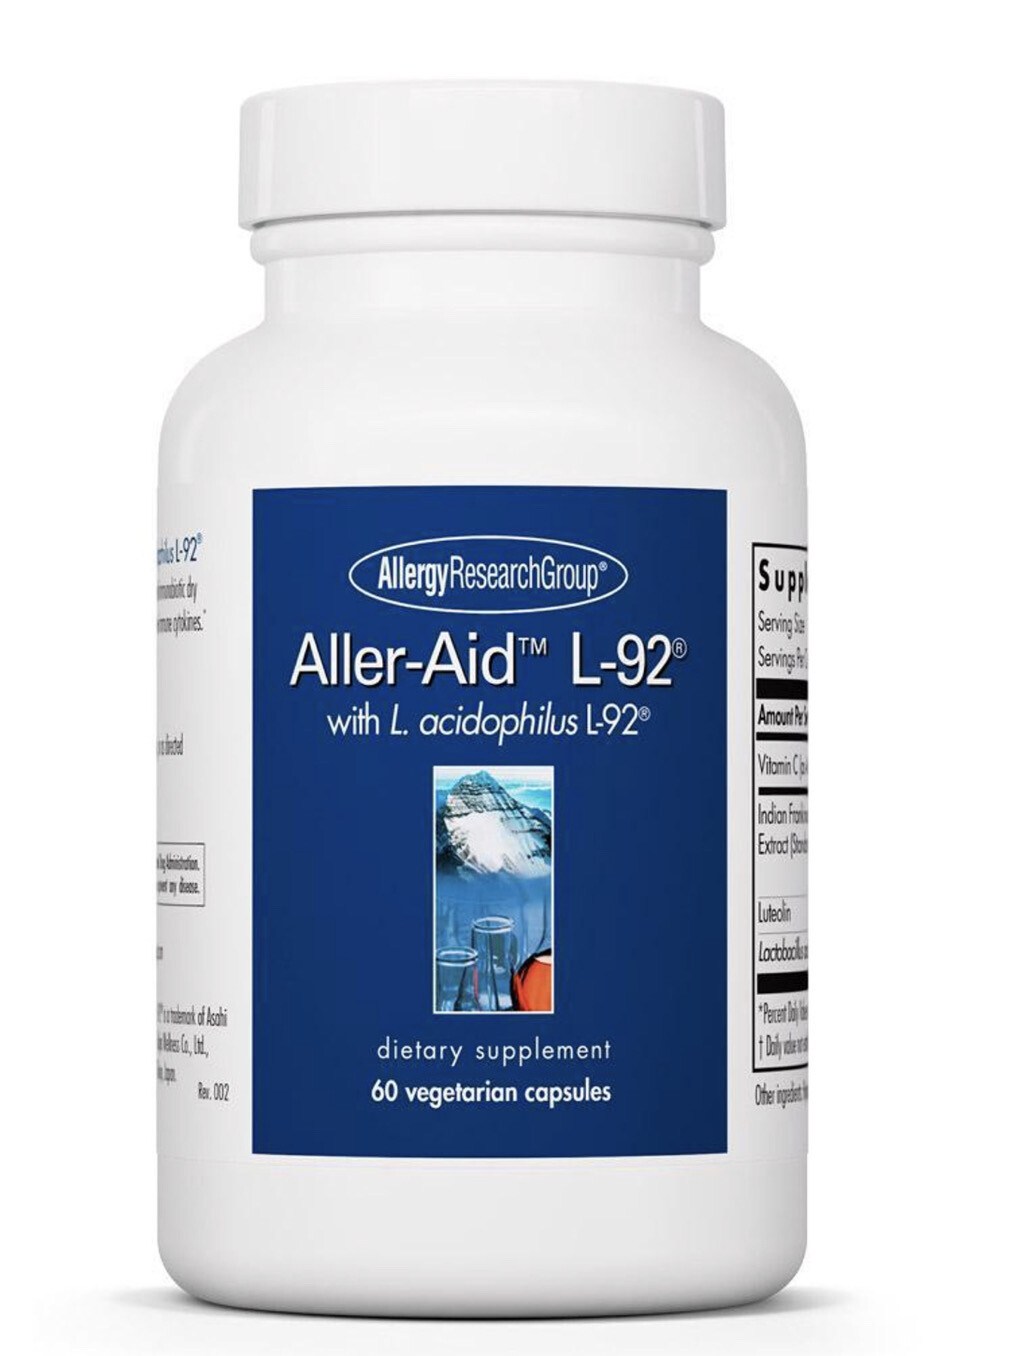 Aller-Aid™ L-92® 60 Vegetarian Capsules
with L. acidophilus L-92®